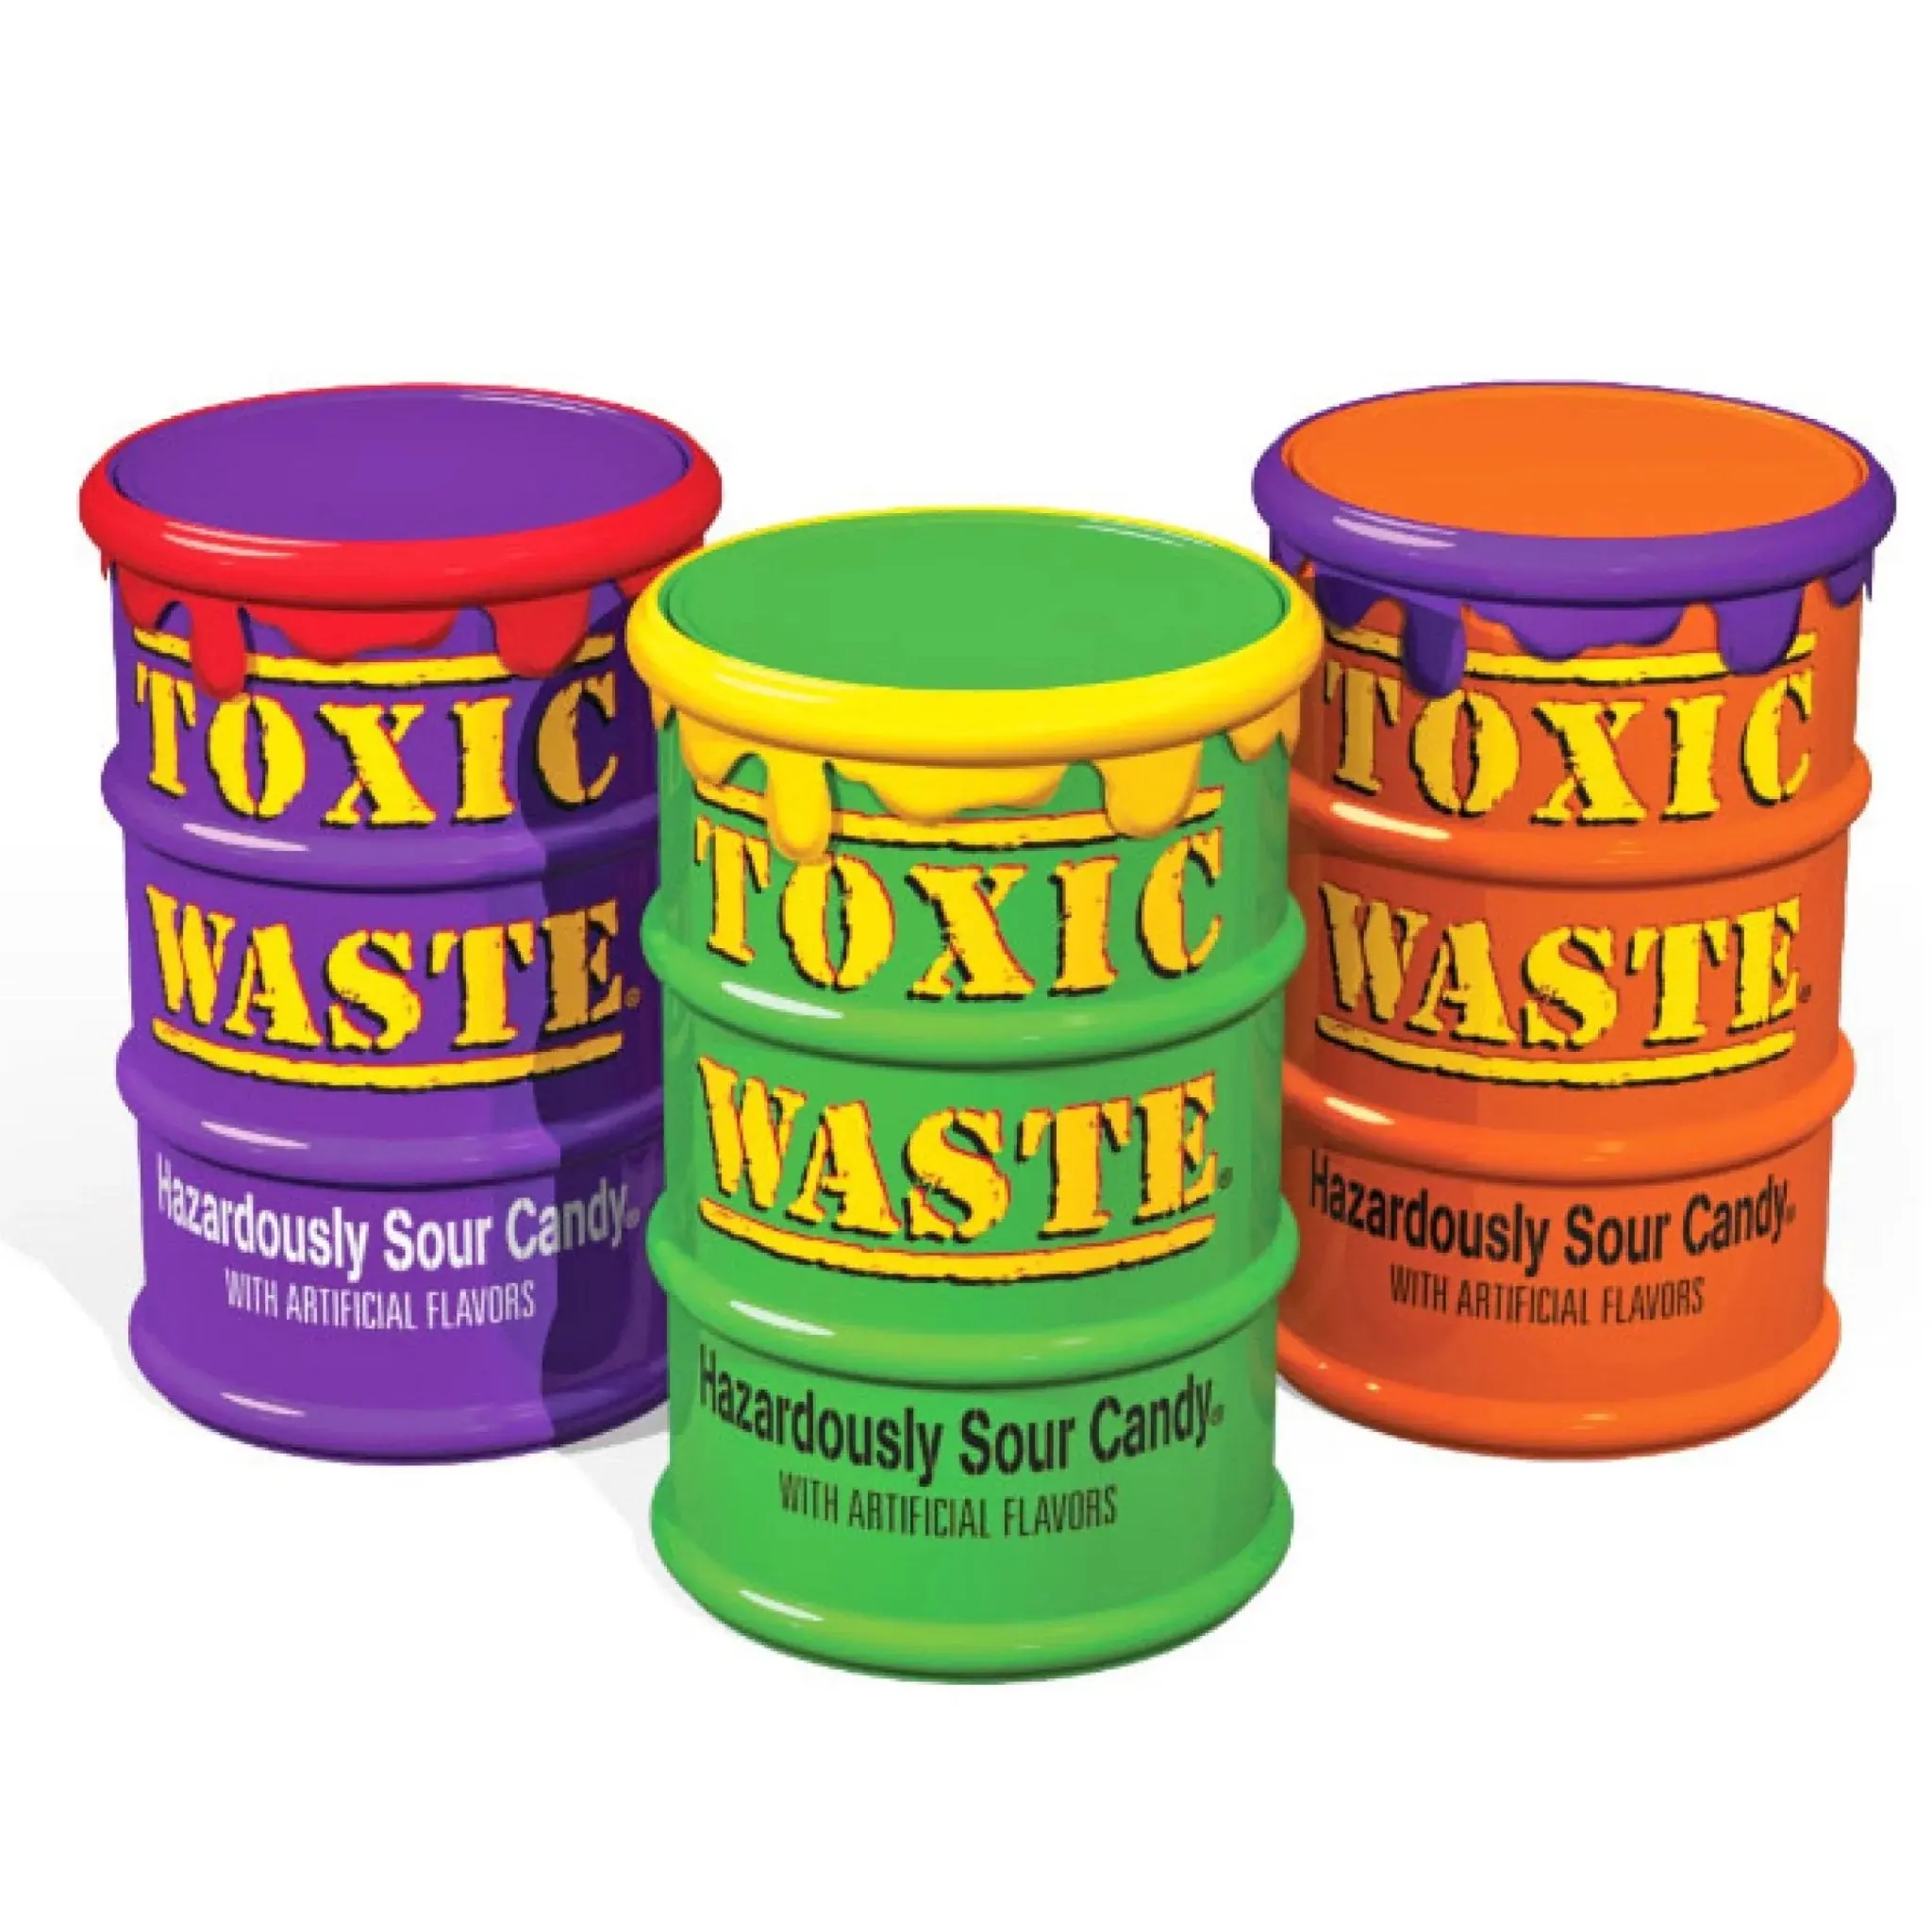 Achetez des déchets toxiques à des prix compétitifs disponibles en vrac/Toxic Waste Sour Purple Candy Drums - 12 pièces